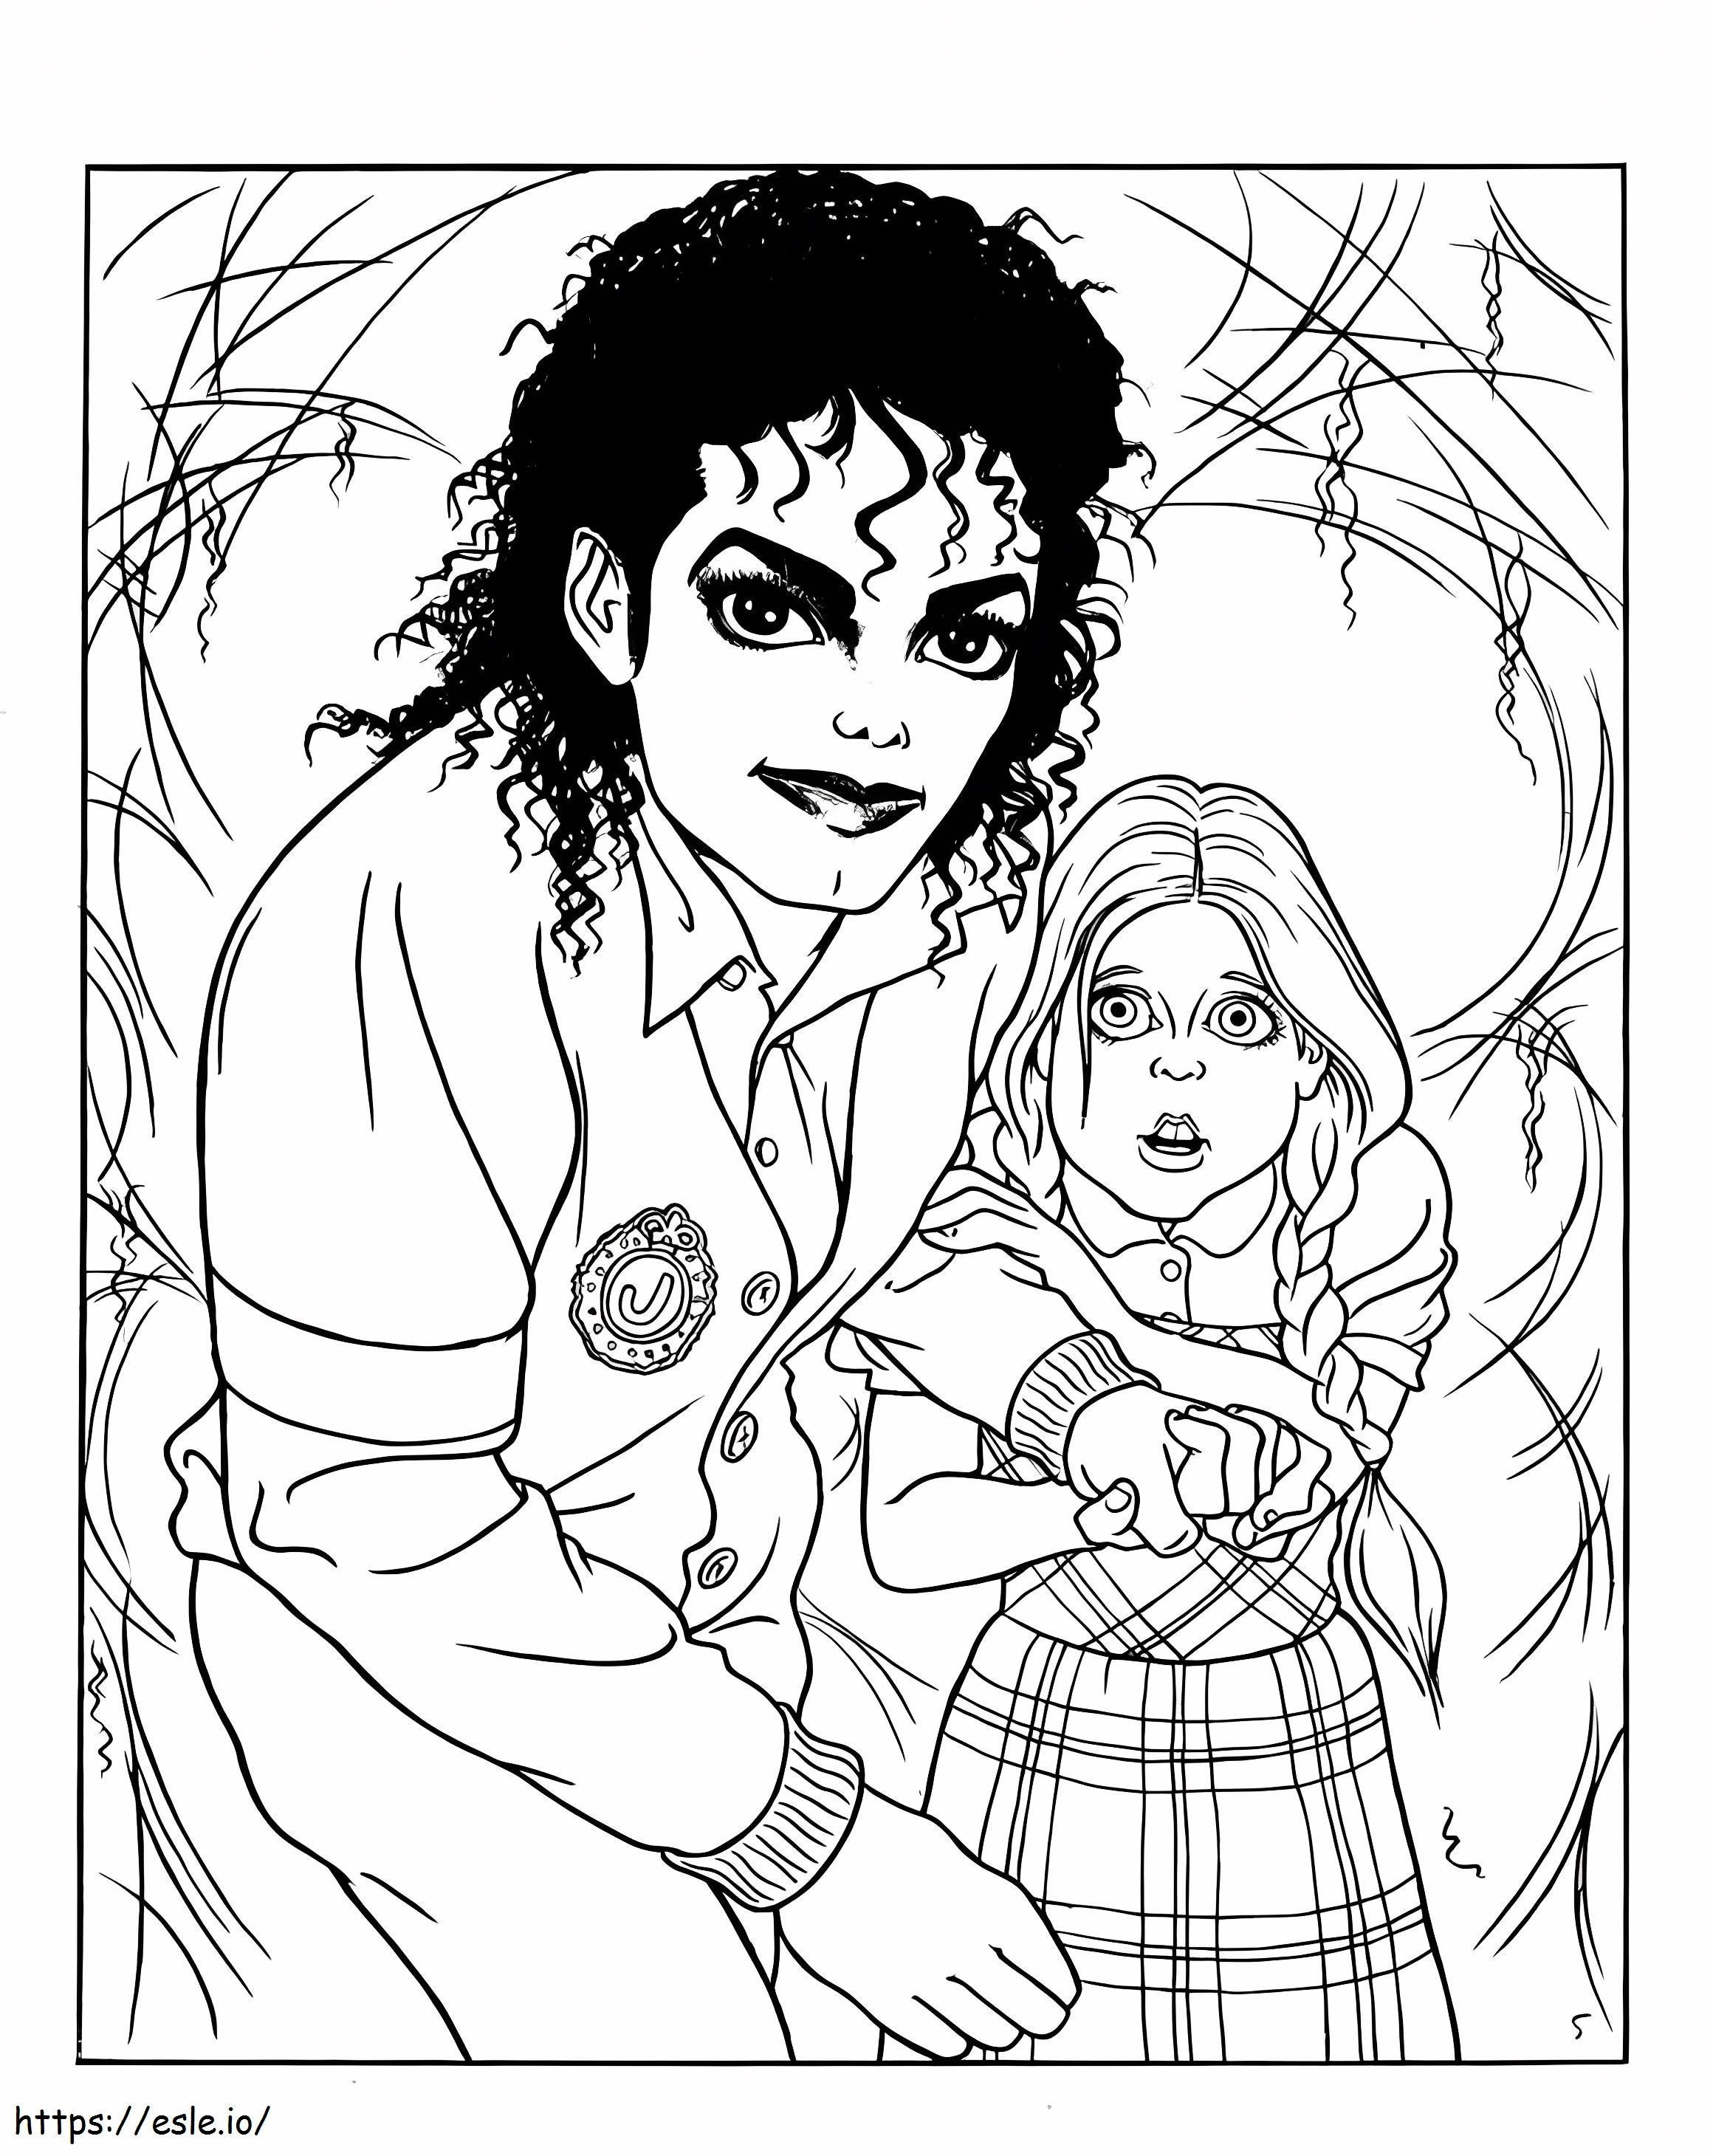 Michael Jackson i mały chłopiec kolorowanka